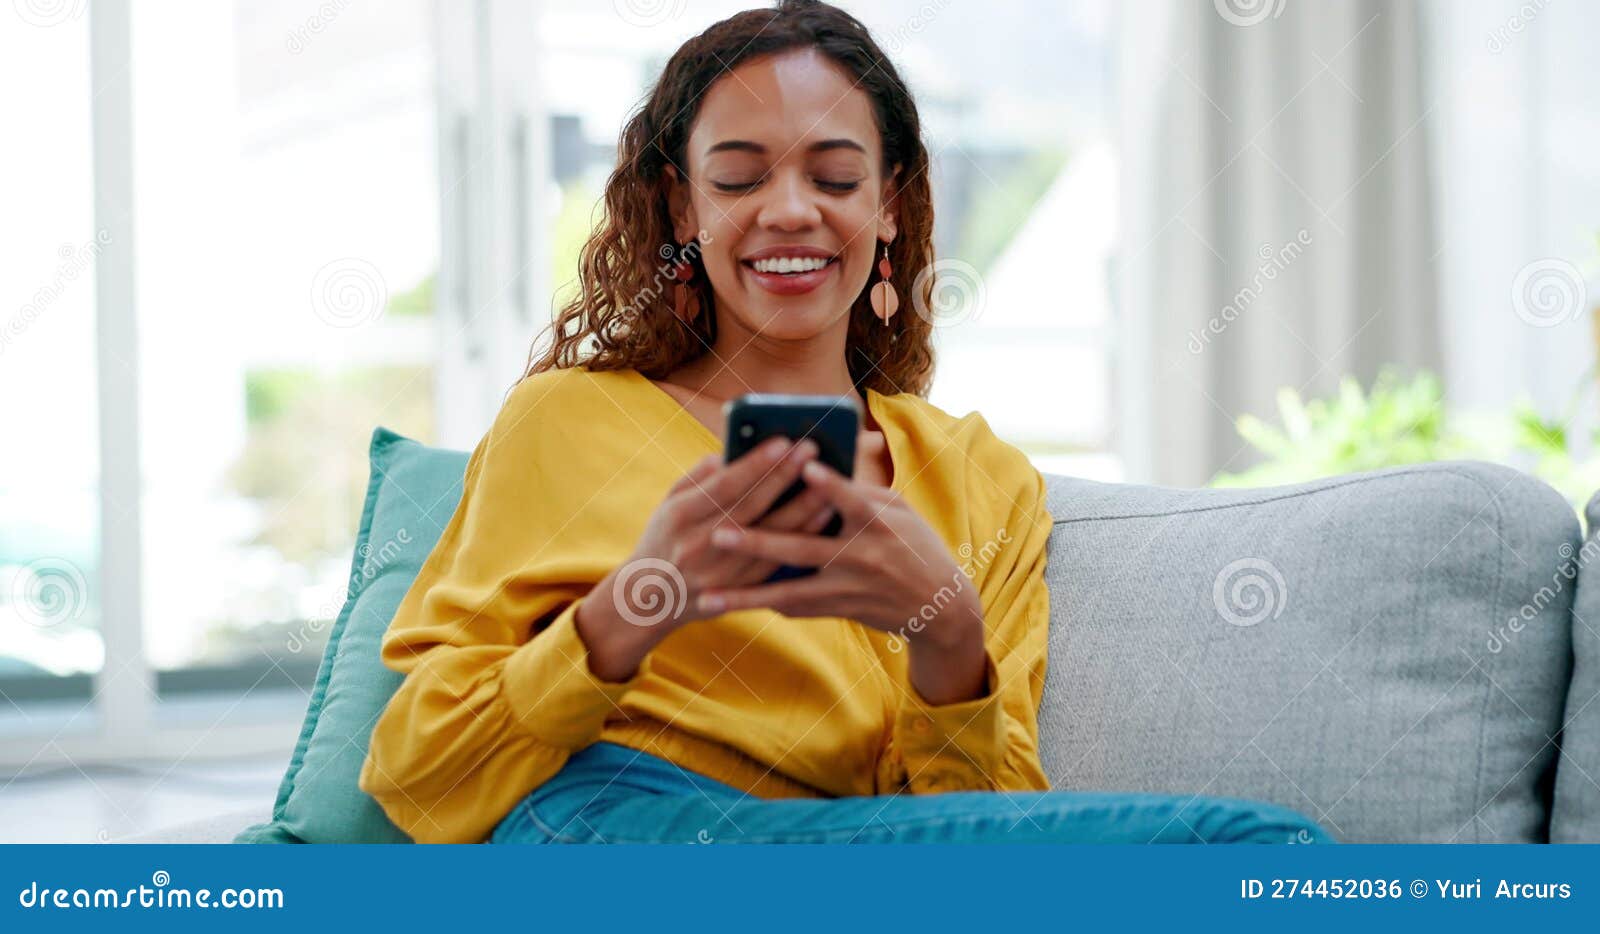 Telefone online e a mulher relaxa mandando mensagens de texto em uma casa  ou apartamento e rindo de memes engraçados da internet nas mídias sociais  sorria feliz e conversando no aplicativo de